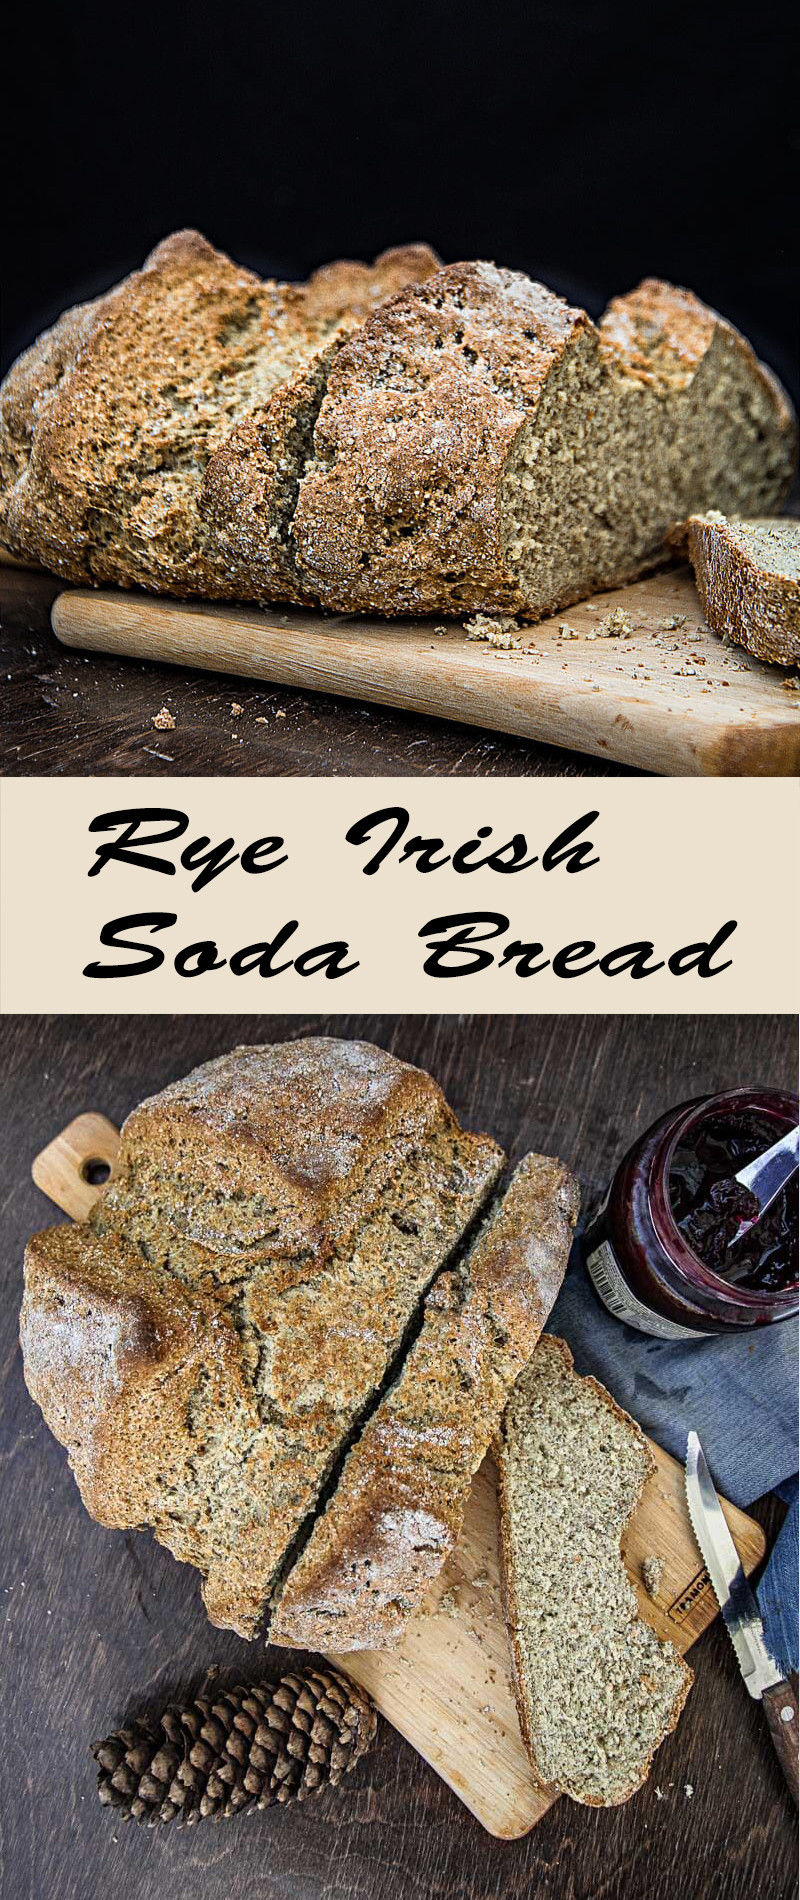 a loaf of rye irish soda bread on a cutting board with a knife